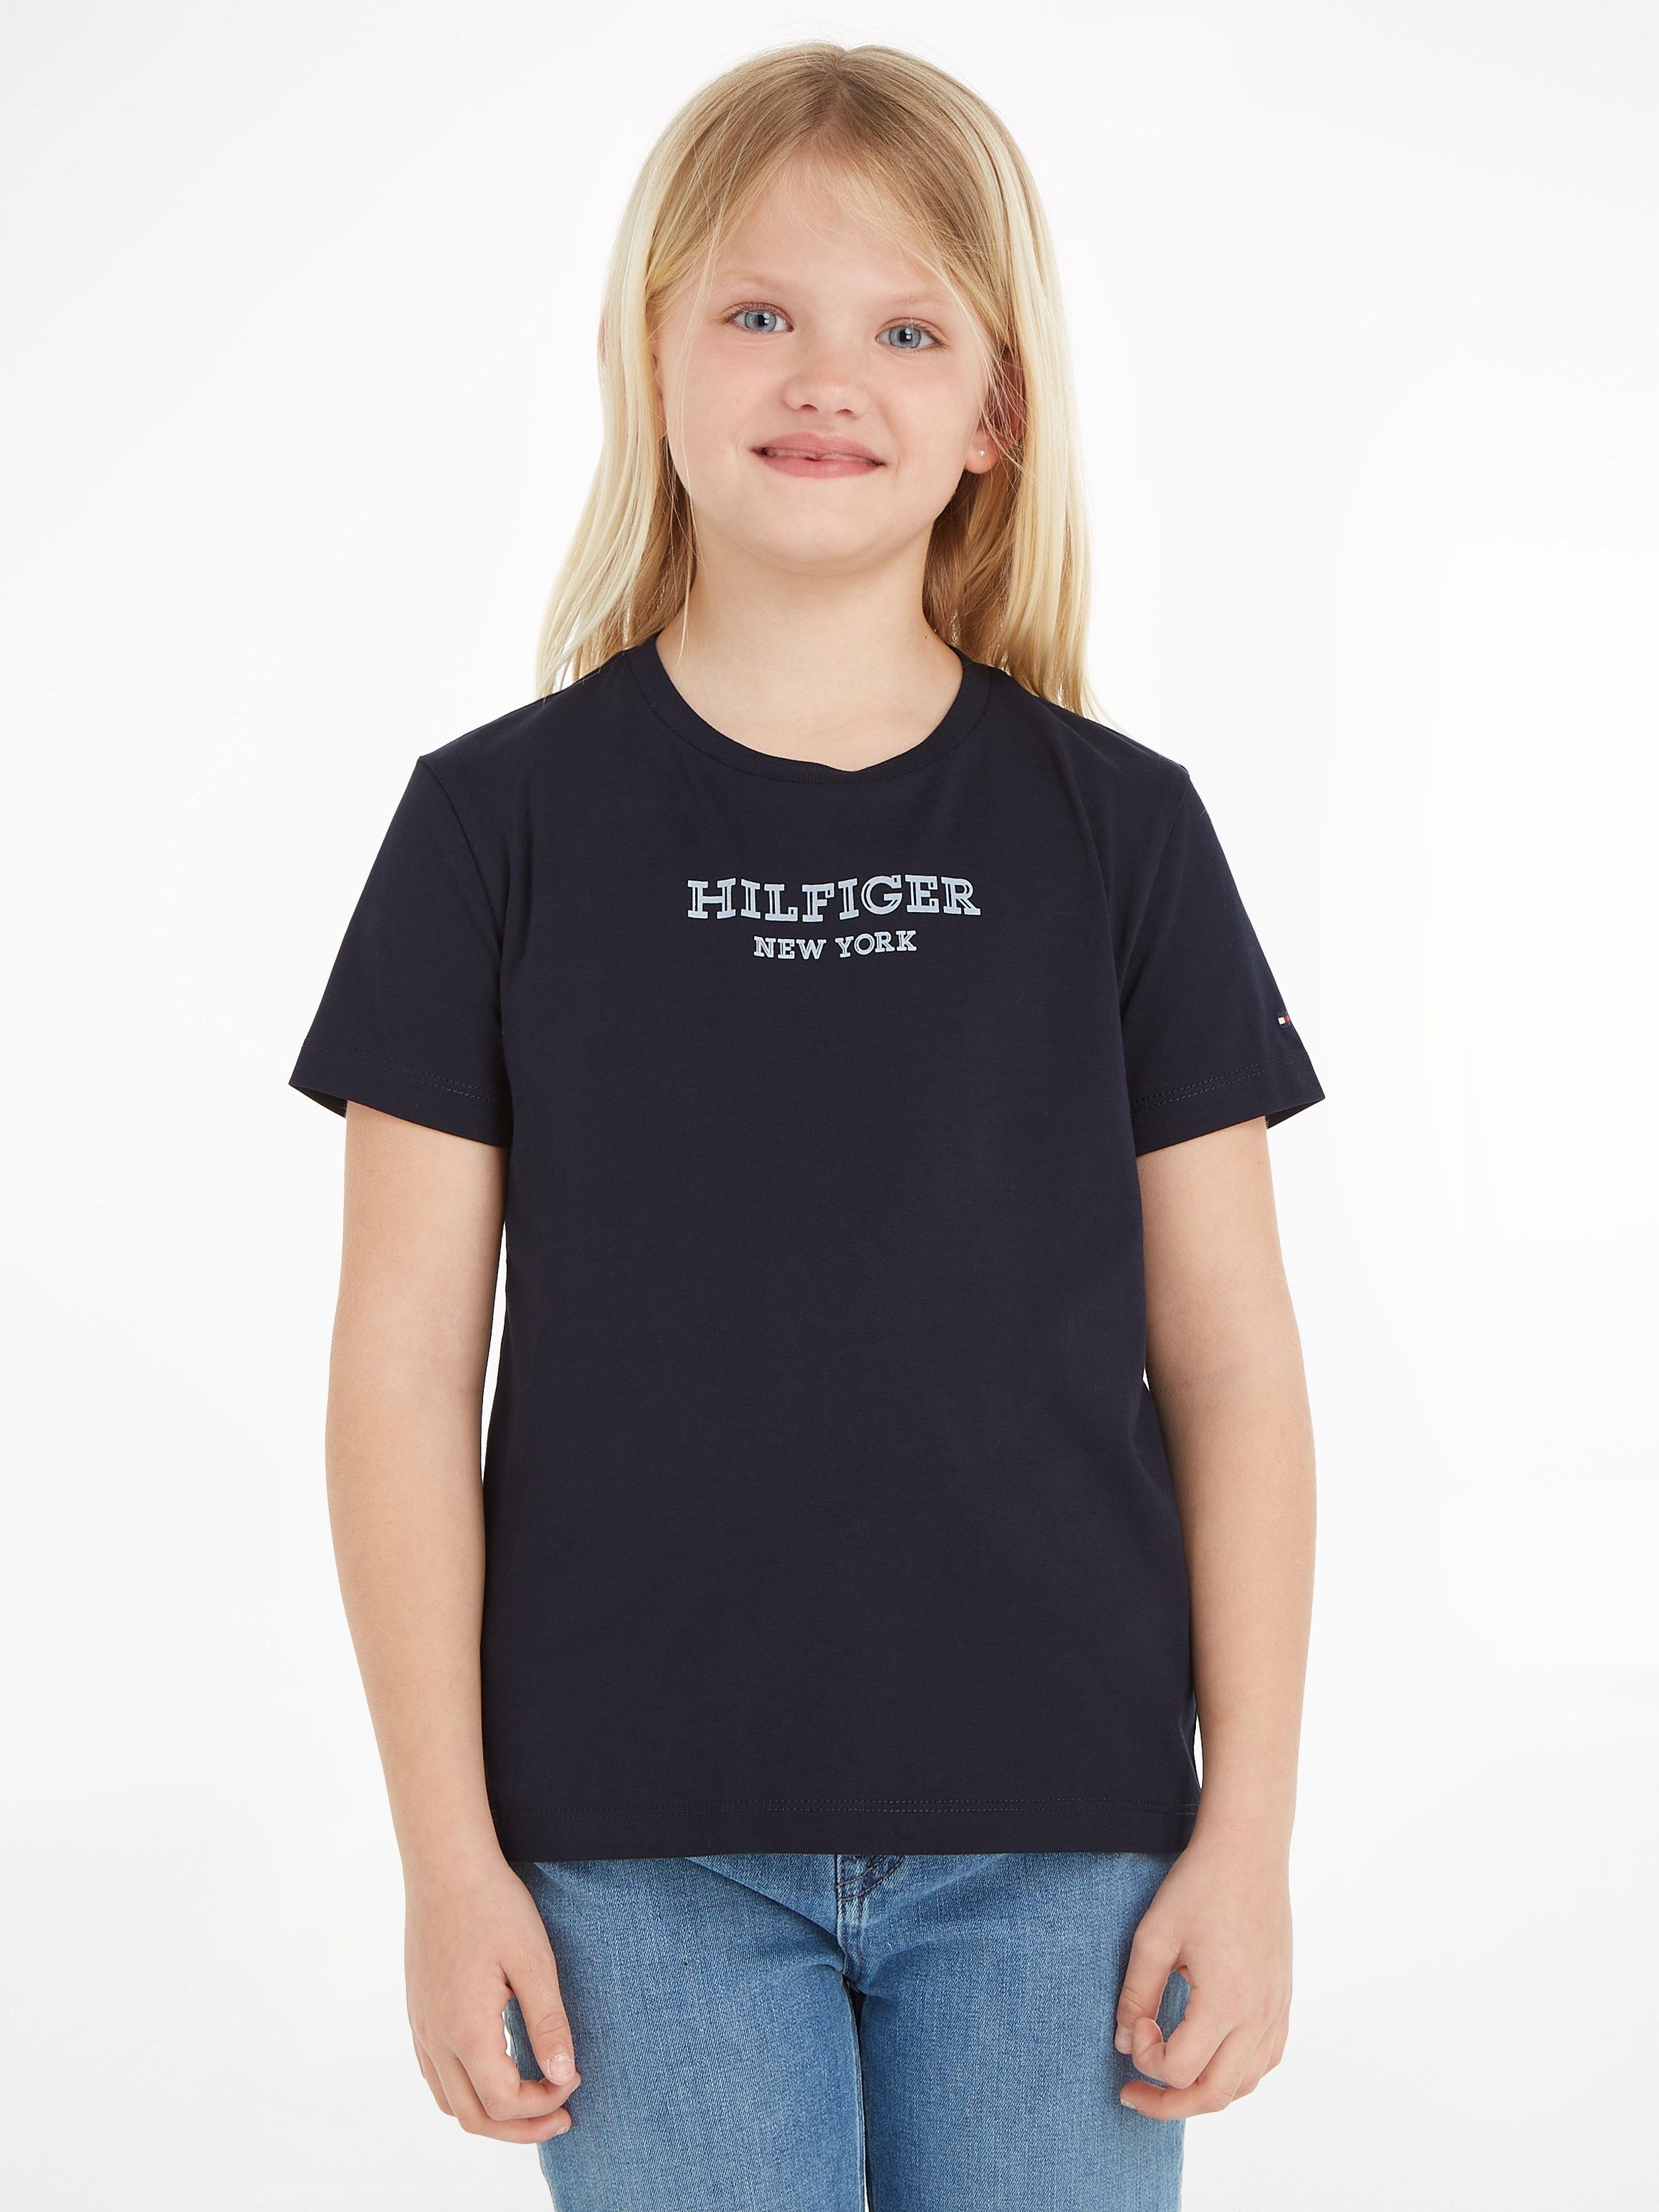 Tommy Hilfiger T-shirt MONOTYPE met tekst zwart Meisjes Katoen Ronde hals 110